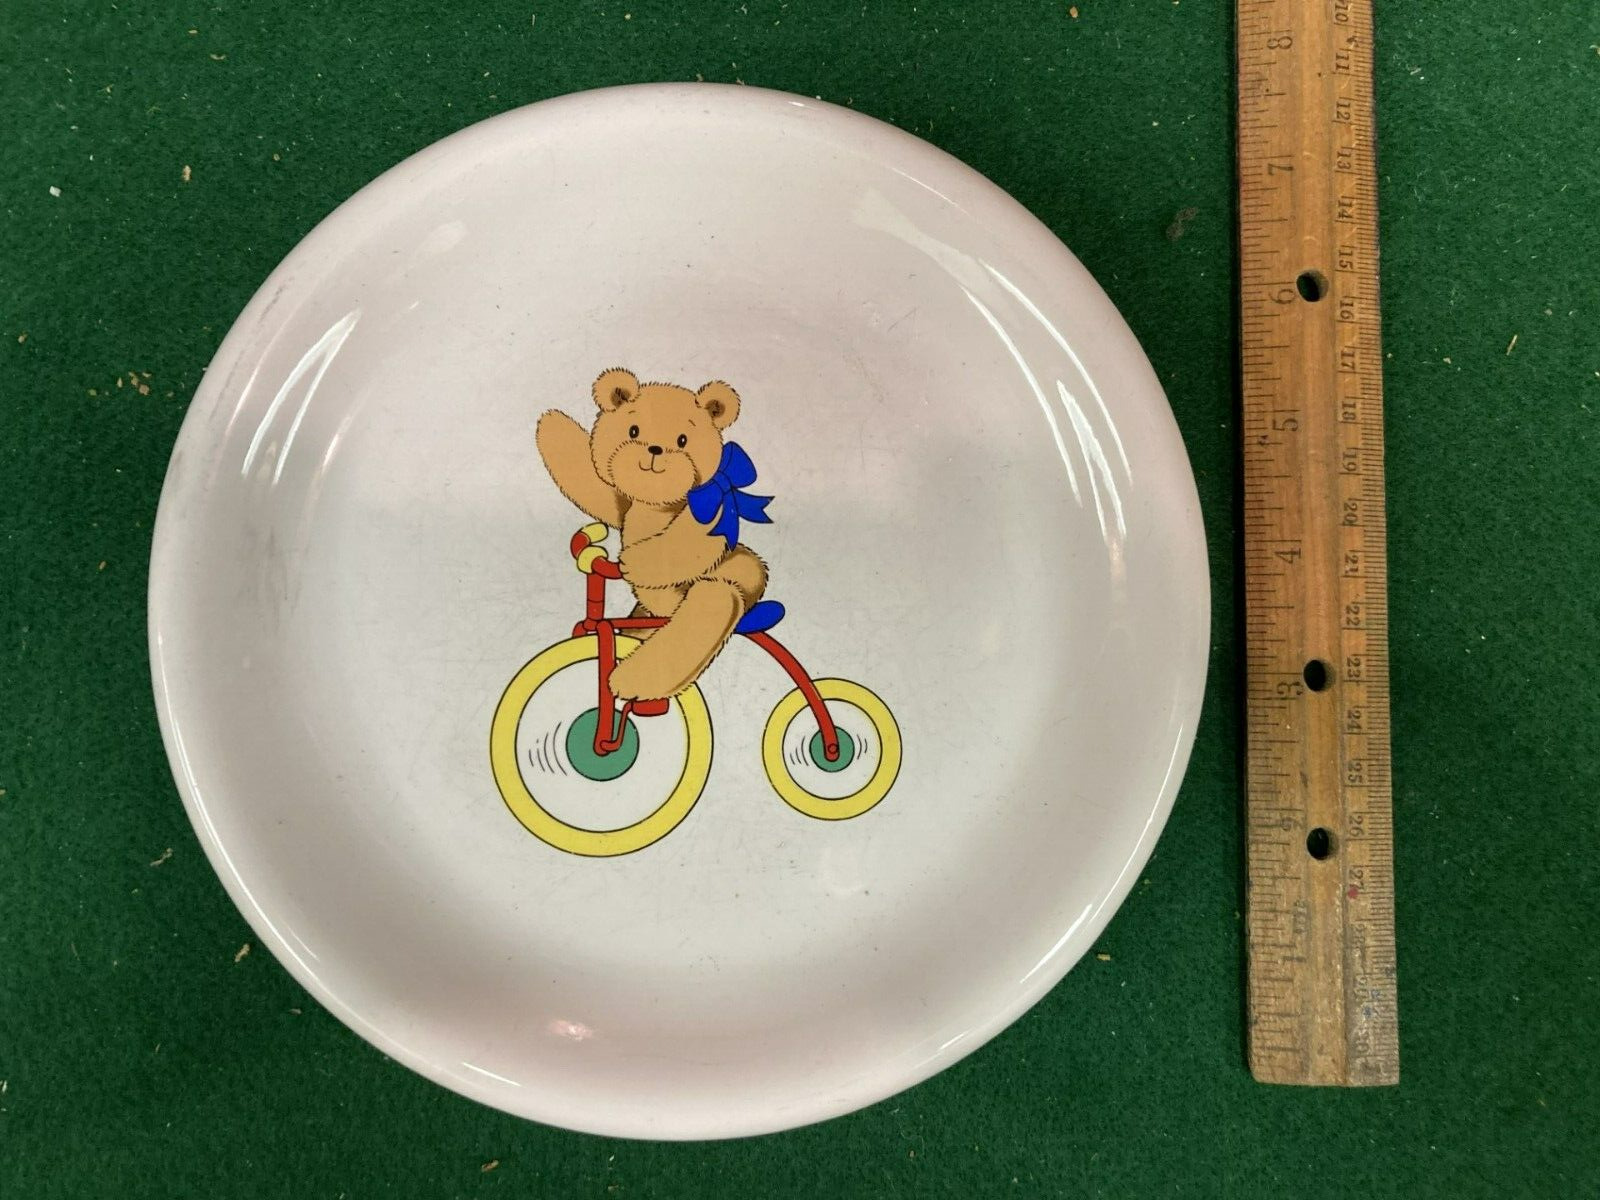 Lillian Vernon designed child's plate